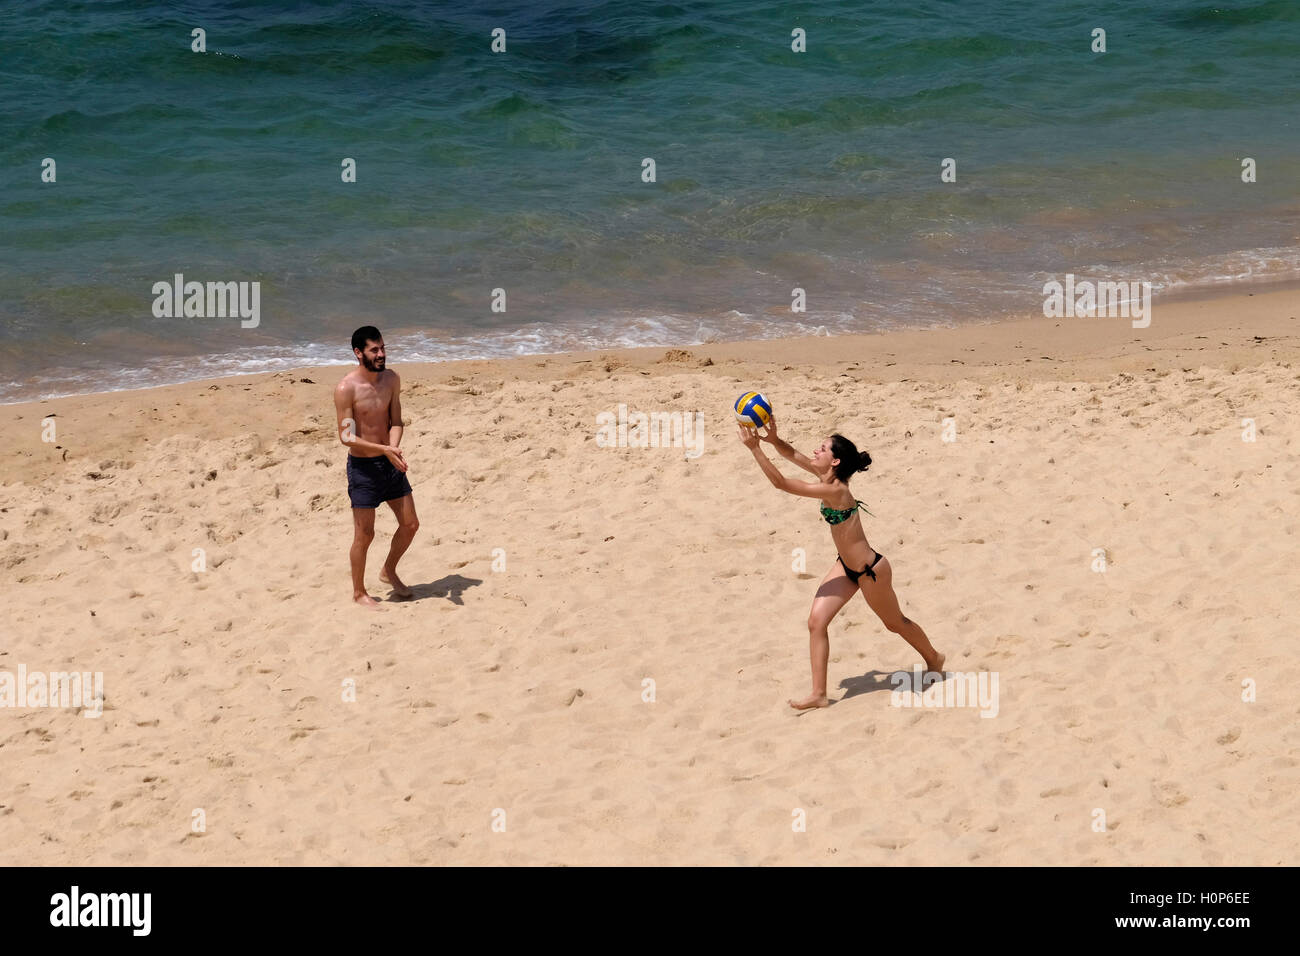 Vista aerea di un giovane uomo e donna giocando a pallavolo sulla spiaggia vicino all'oceano Foto Stock